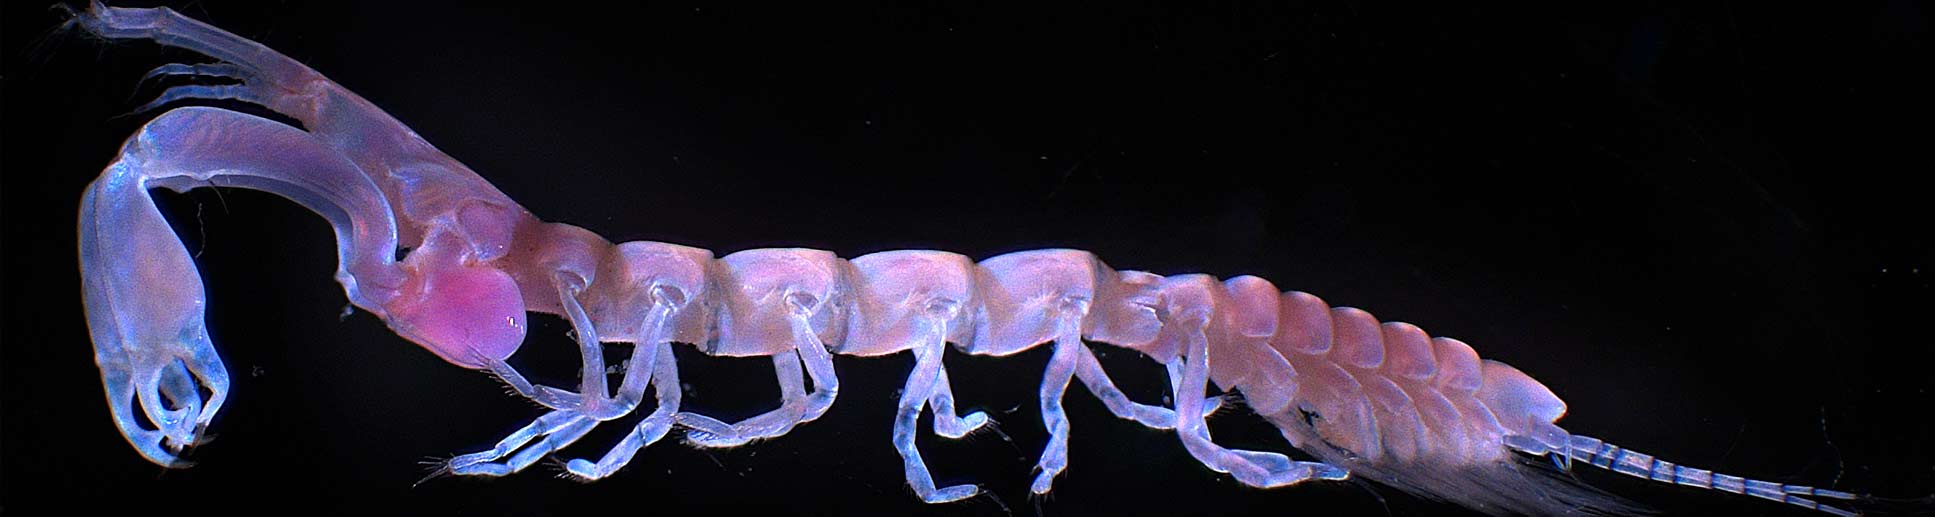 Image of am unknown, stunning marine crustacean